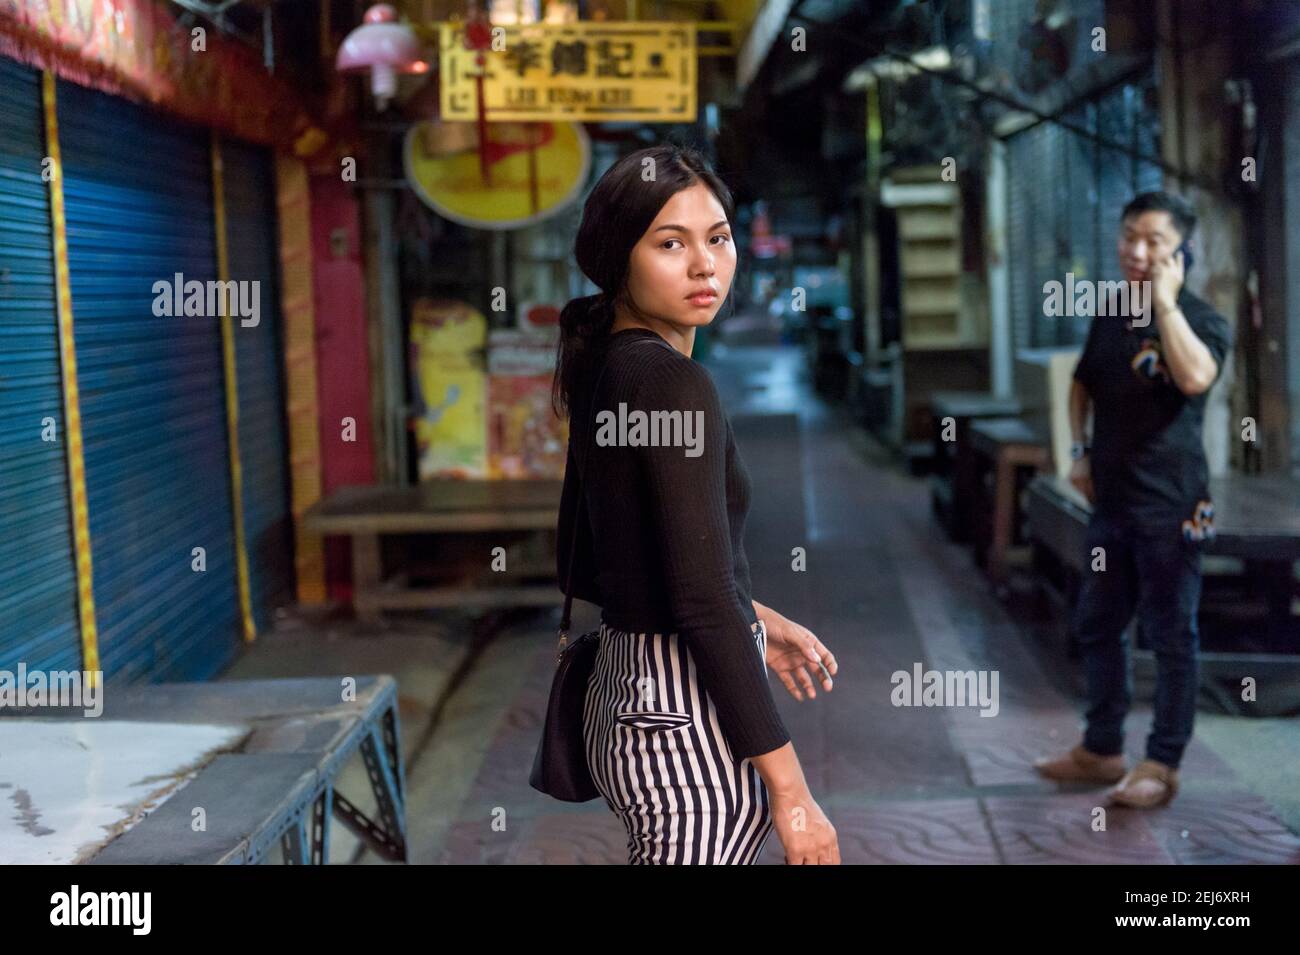 Giovane bella ragazza asiatica in un vicolo stretto di notte, allontanandosi dalla macchina fotografica mentre si guarda indietro la macchina fotografica. Uomo in piedi sullo sfondo. Foto Stock